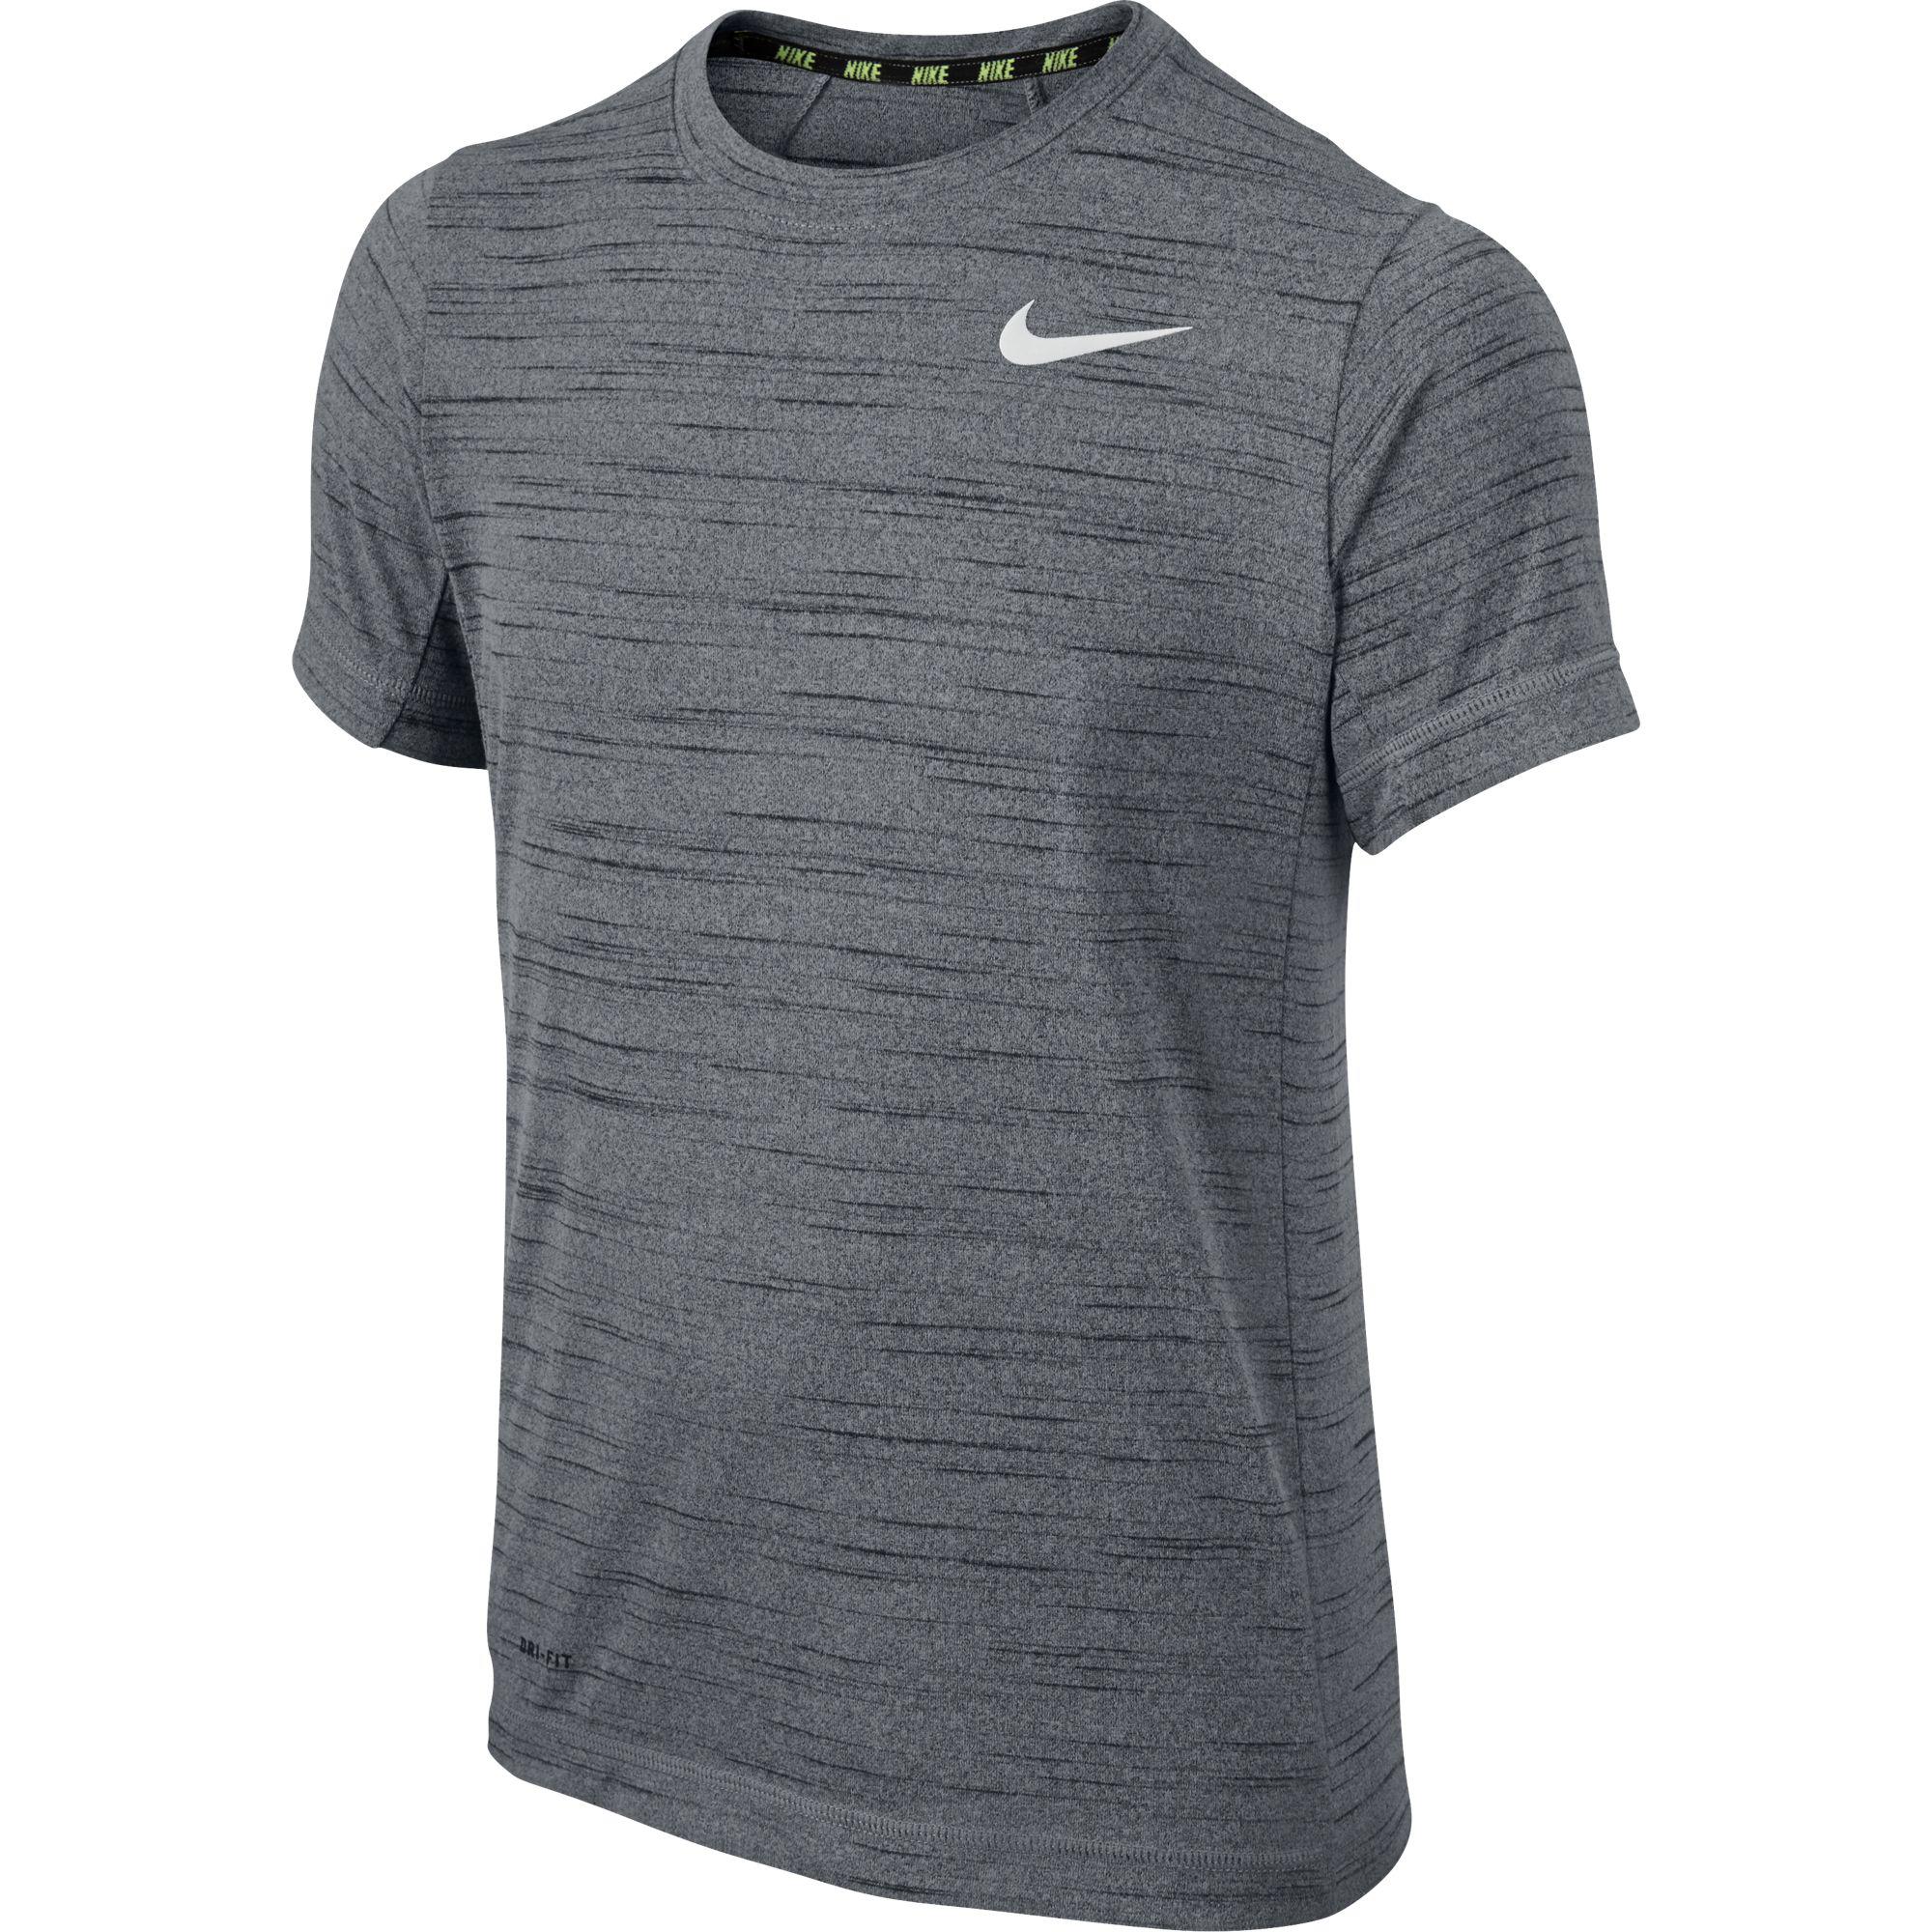 Nike dri fit team apparel